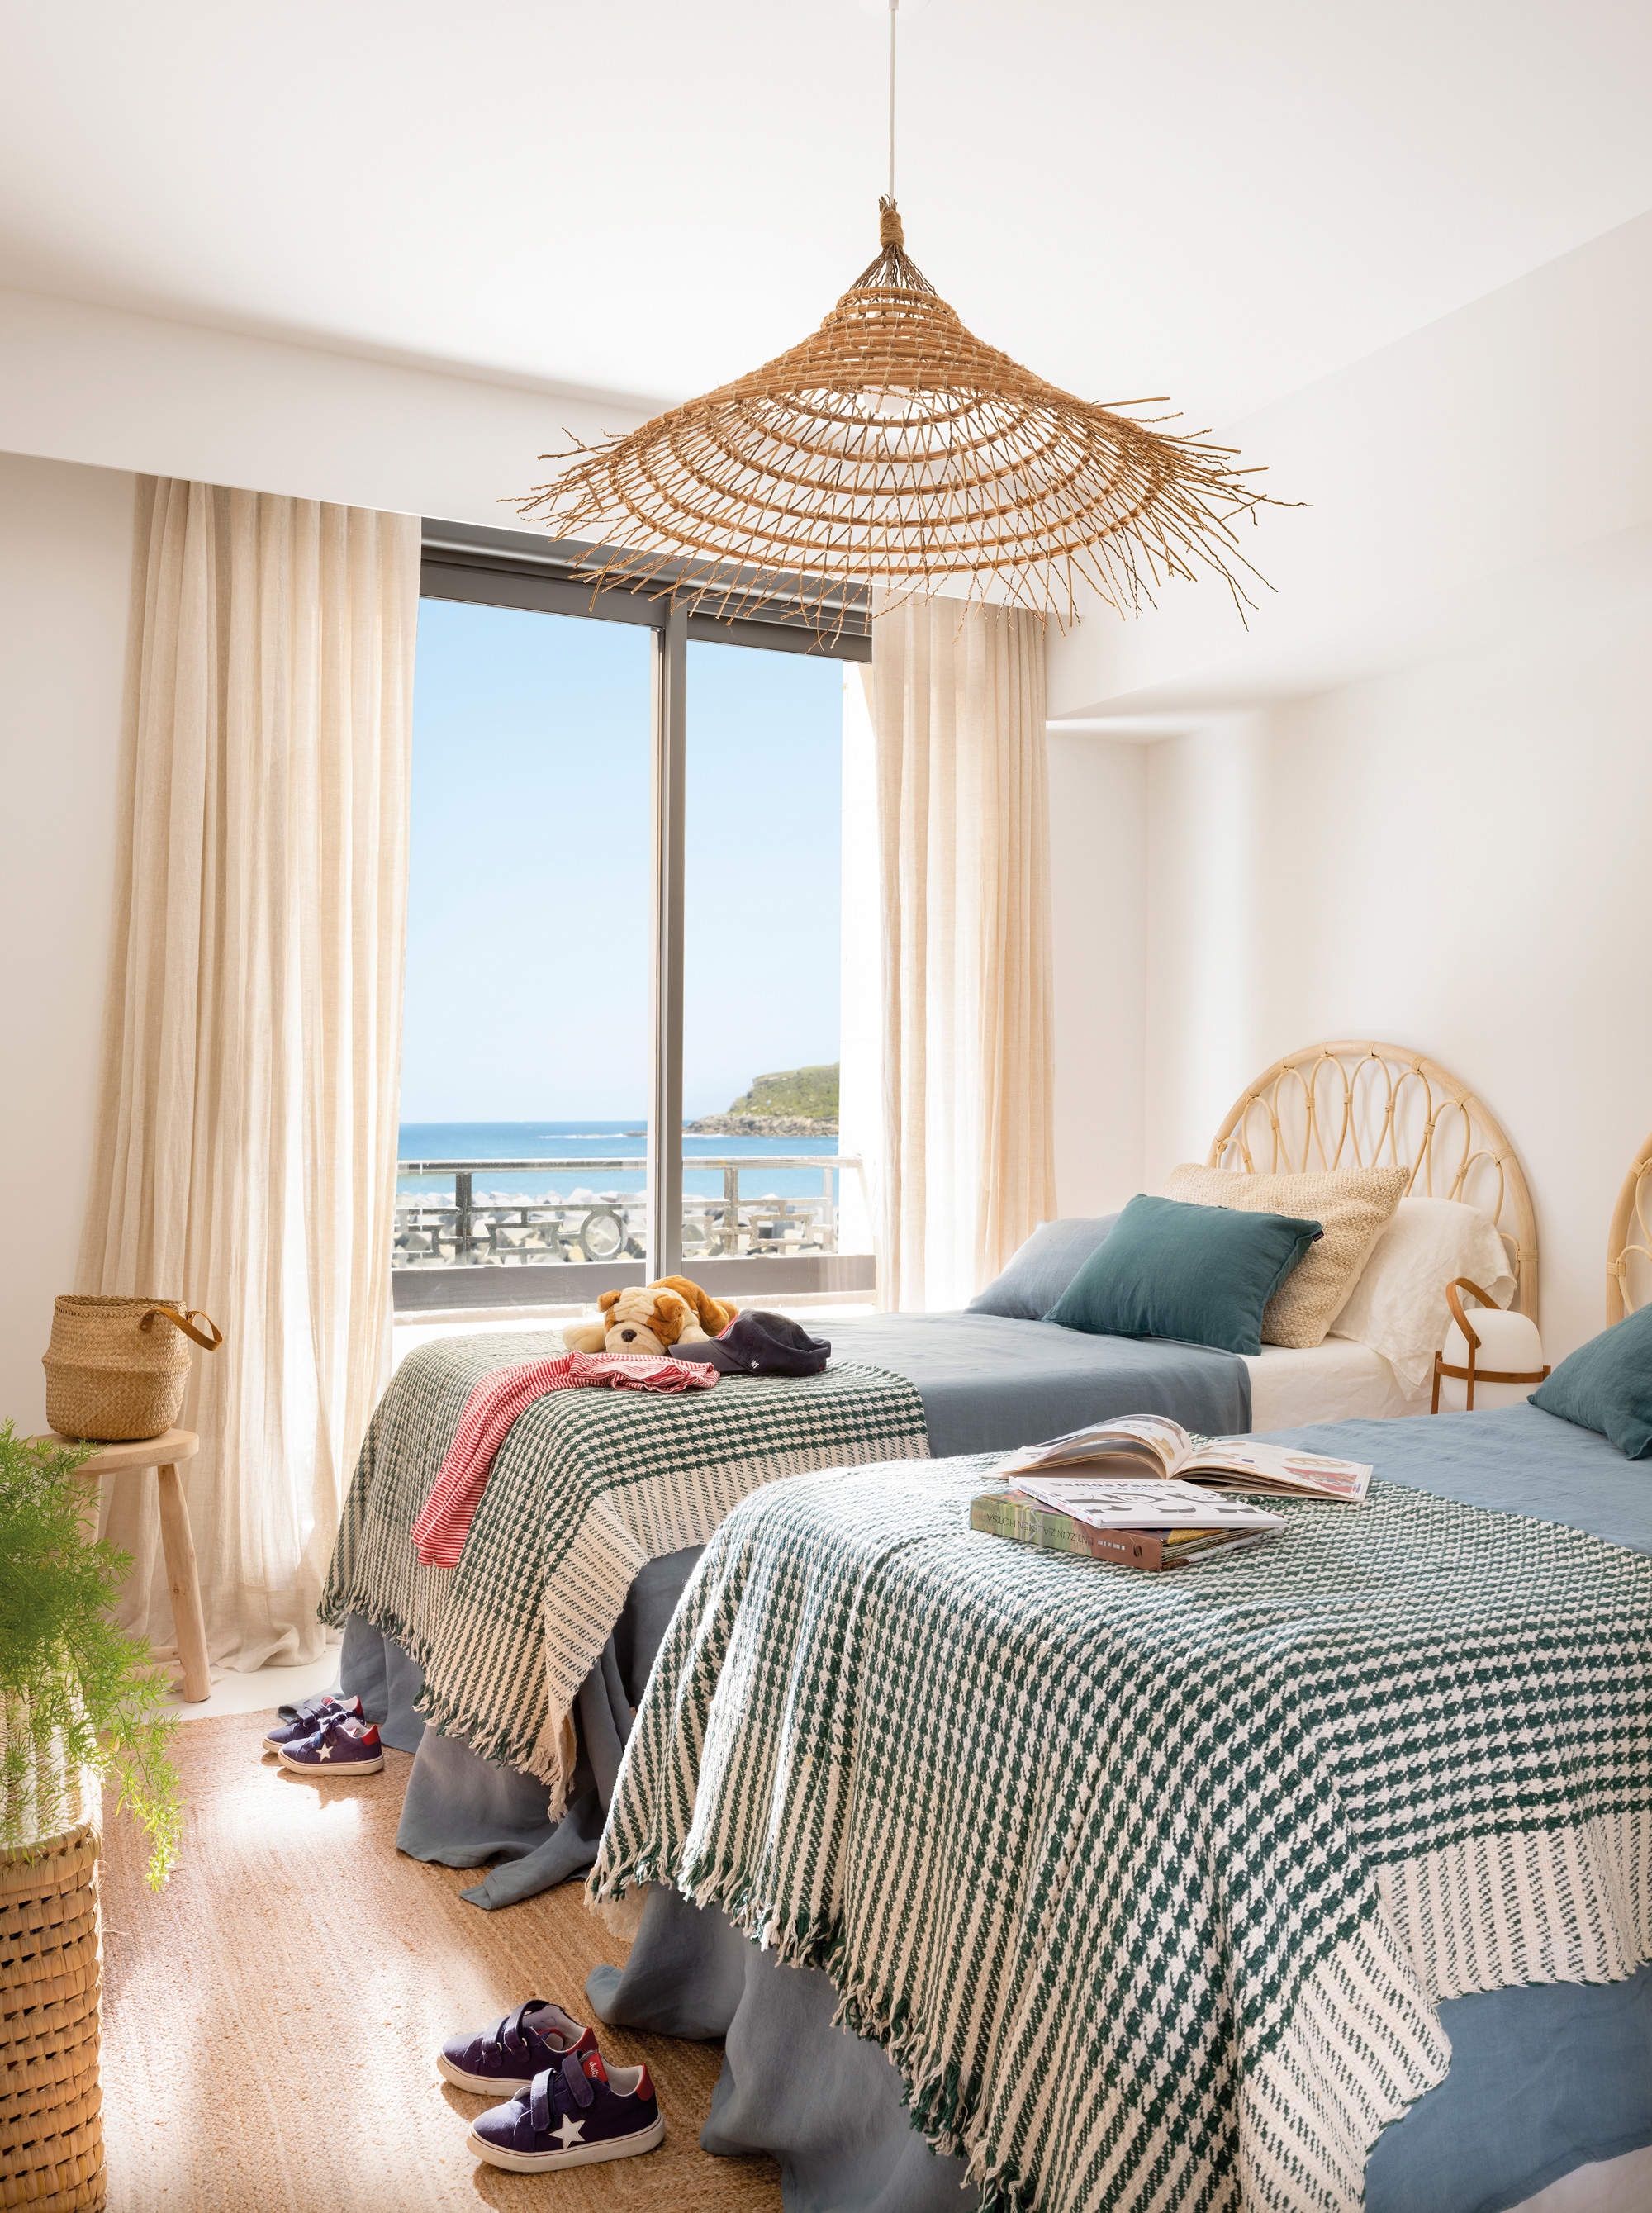 Dormitorio decorado en tonos neutros y azules con muebles y complementos de fibra.